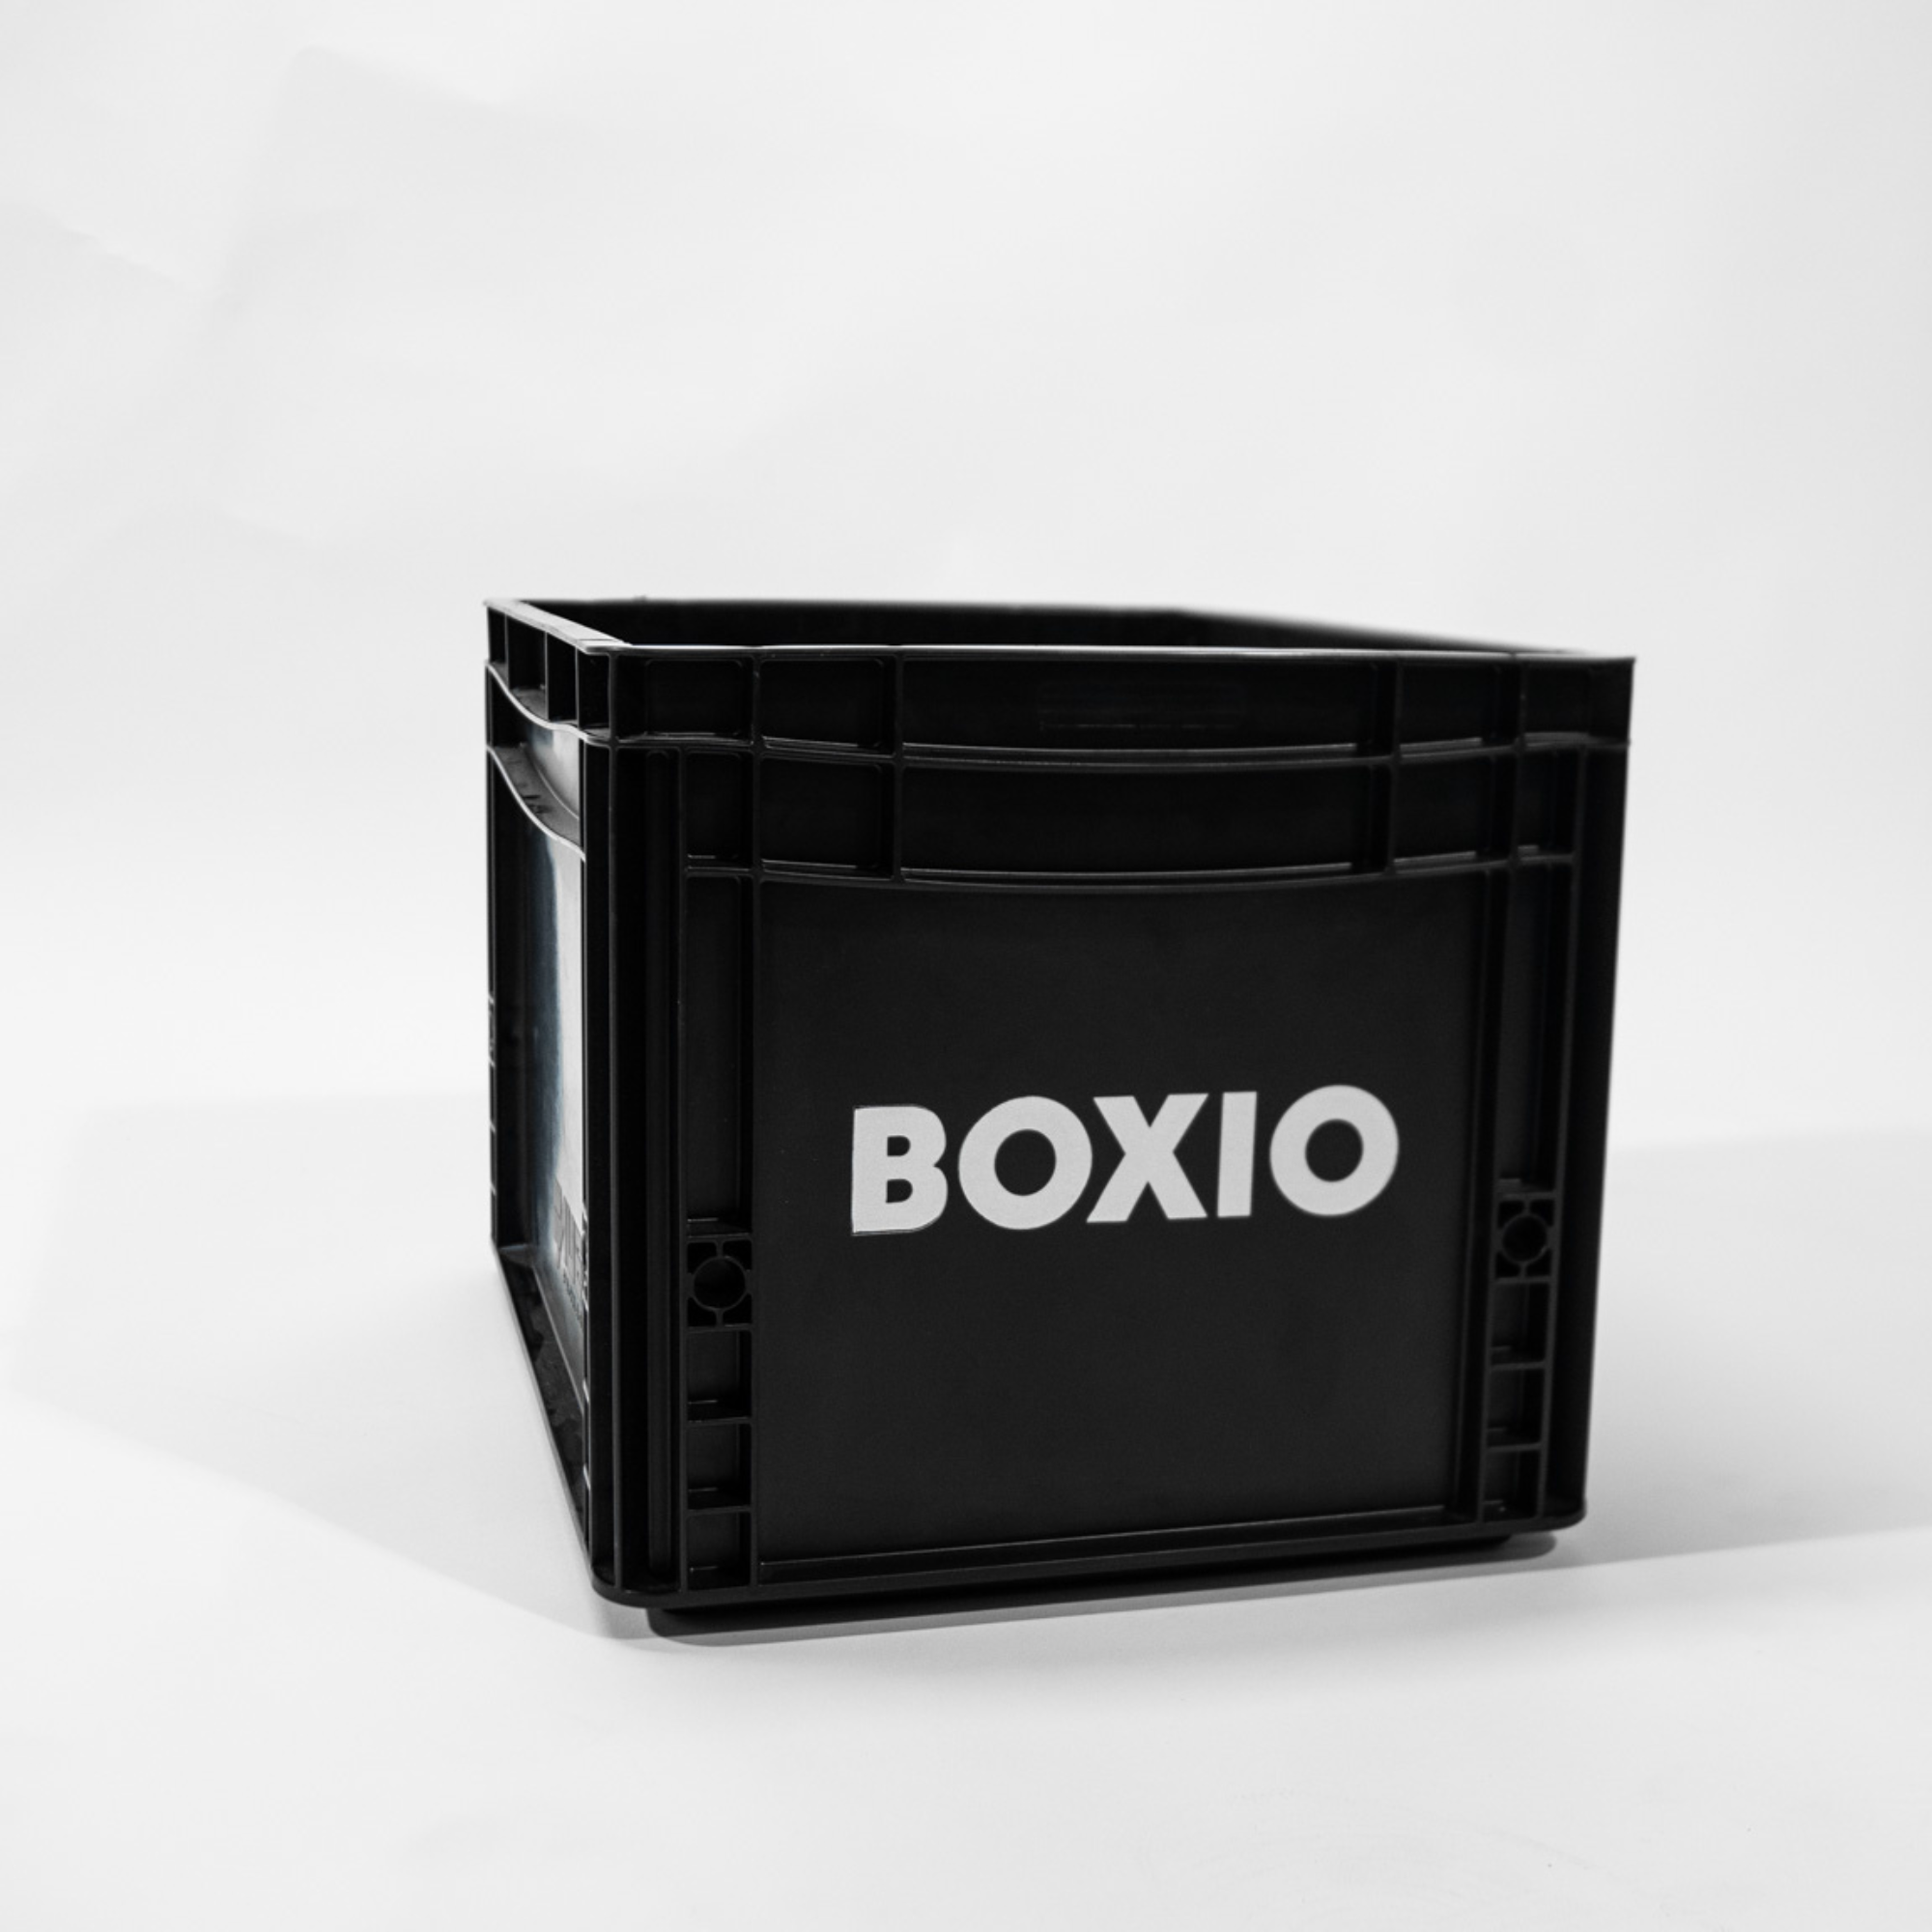 Eurobox "BOXIO" con taladros para BOXIO - TOILET